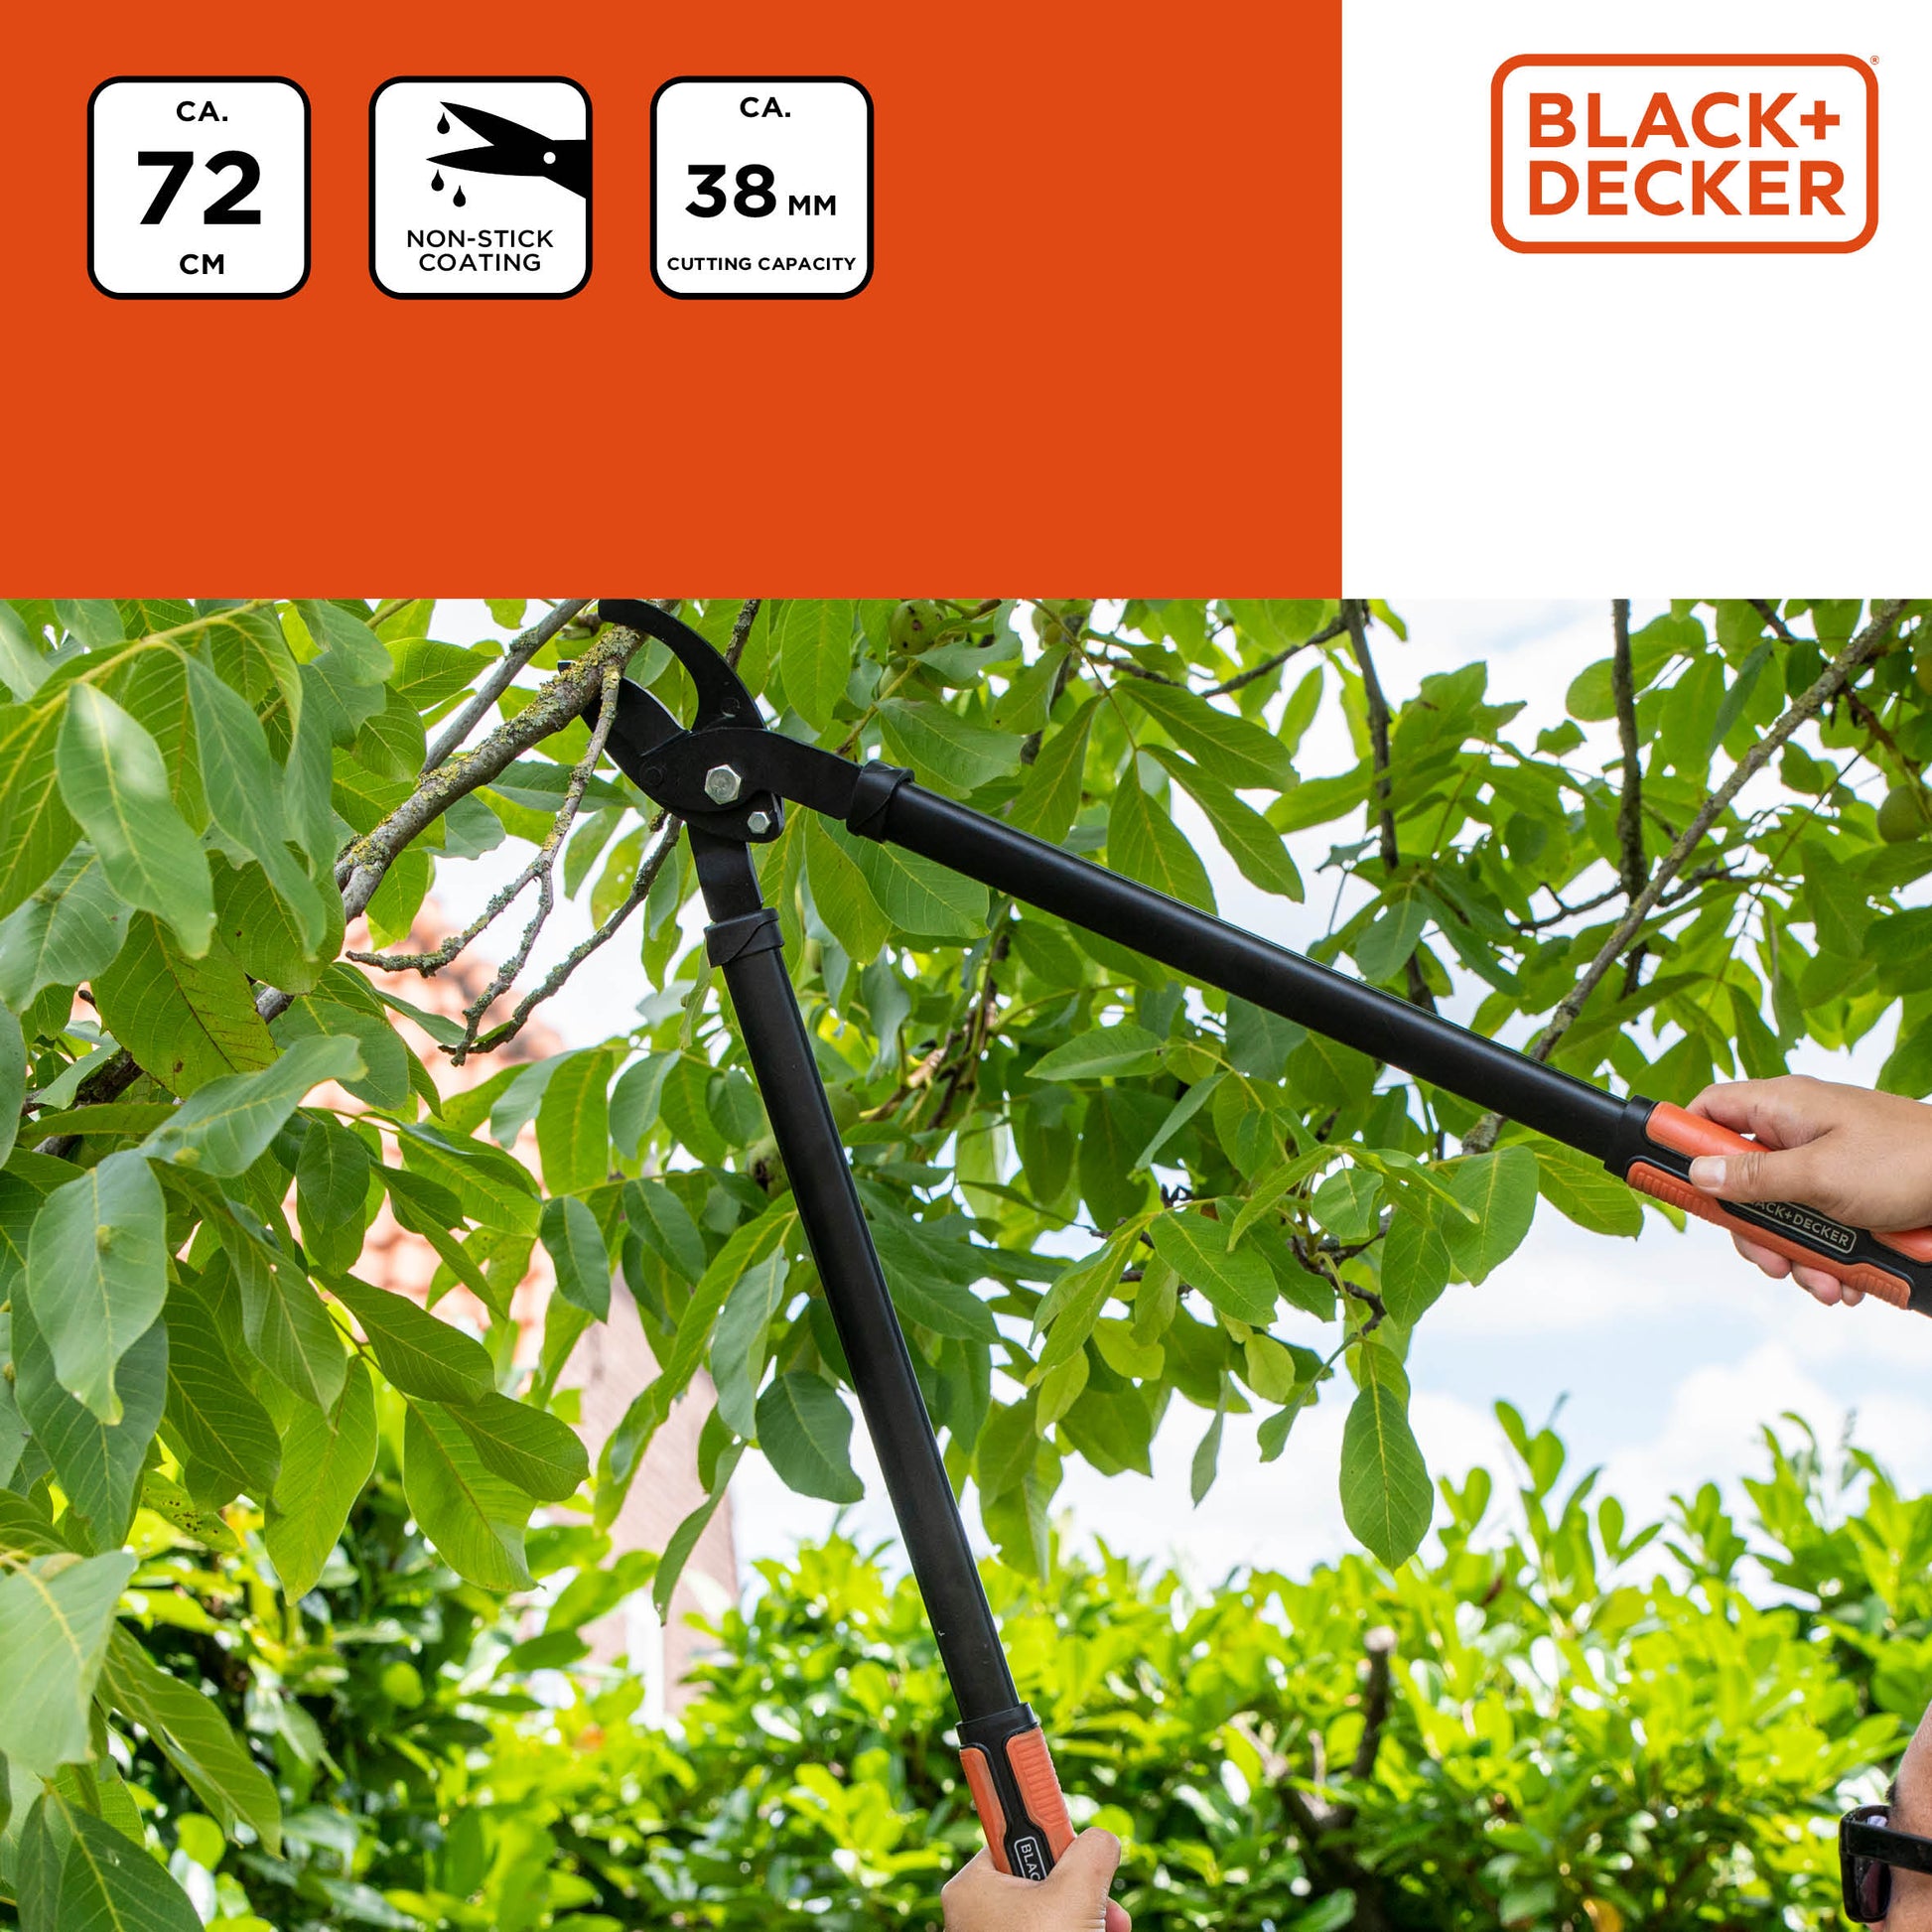 BLACK+DECKER takkenschaar - Krachtig en handig voor een opgeruimde tuin - Bivakshop